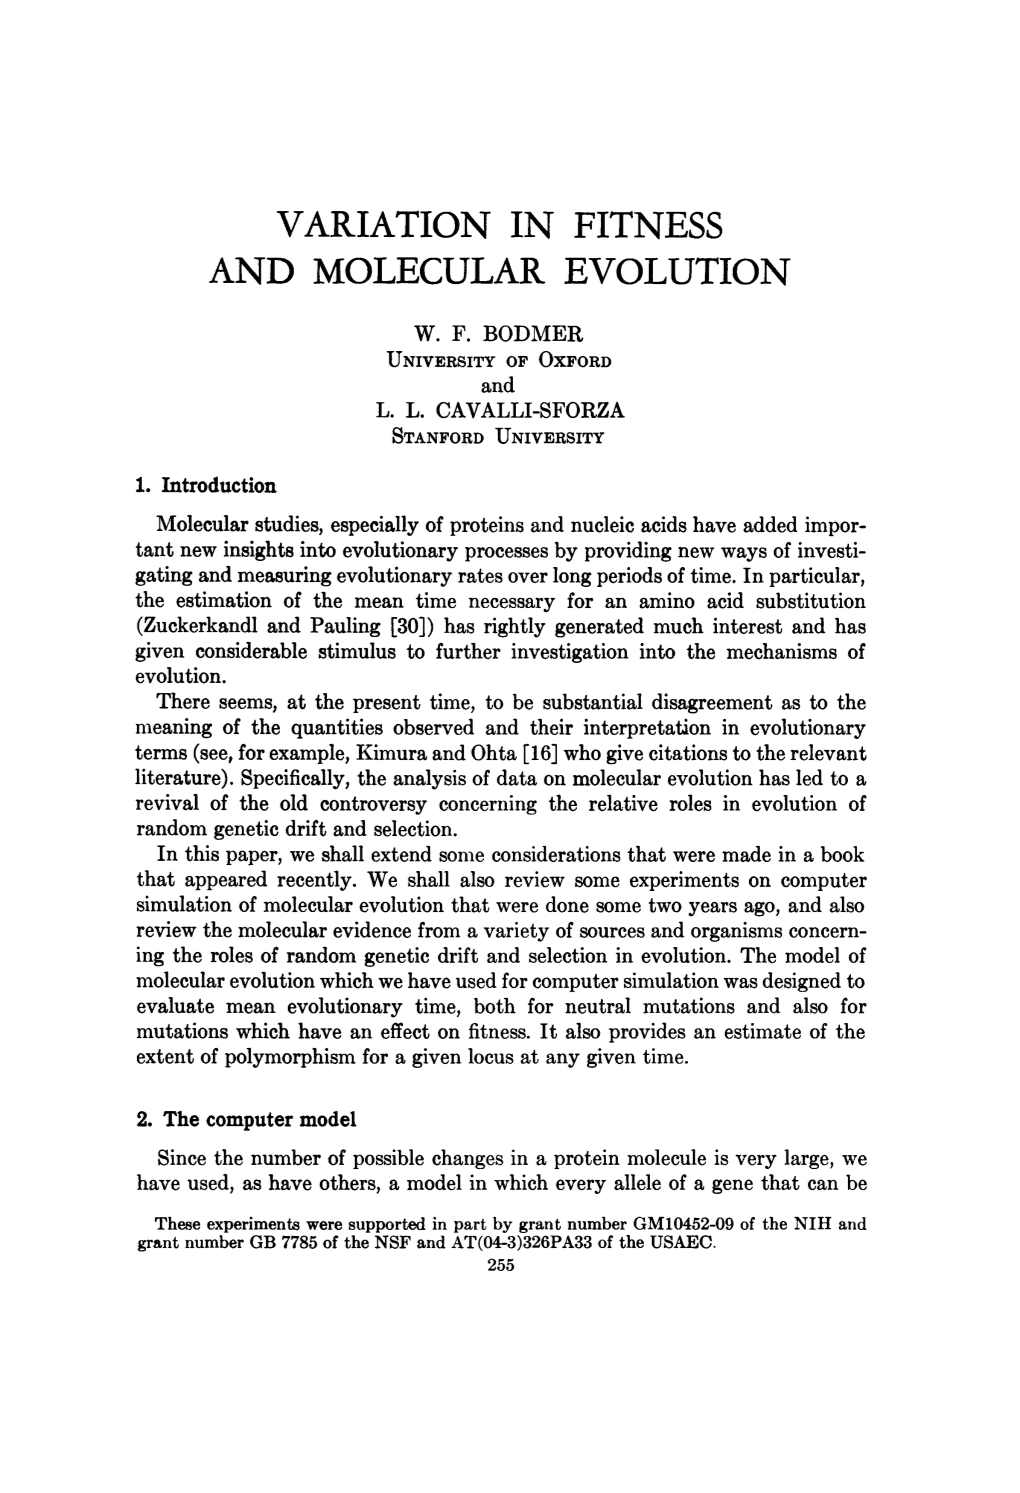 Variation in Fitness and Molecular Evolution